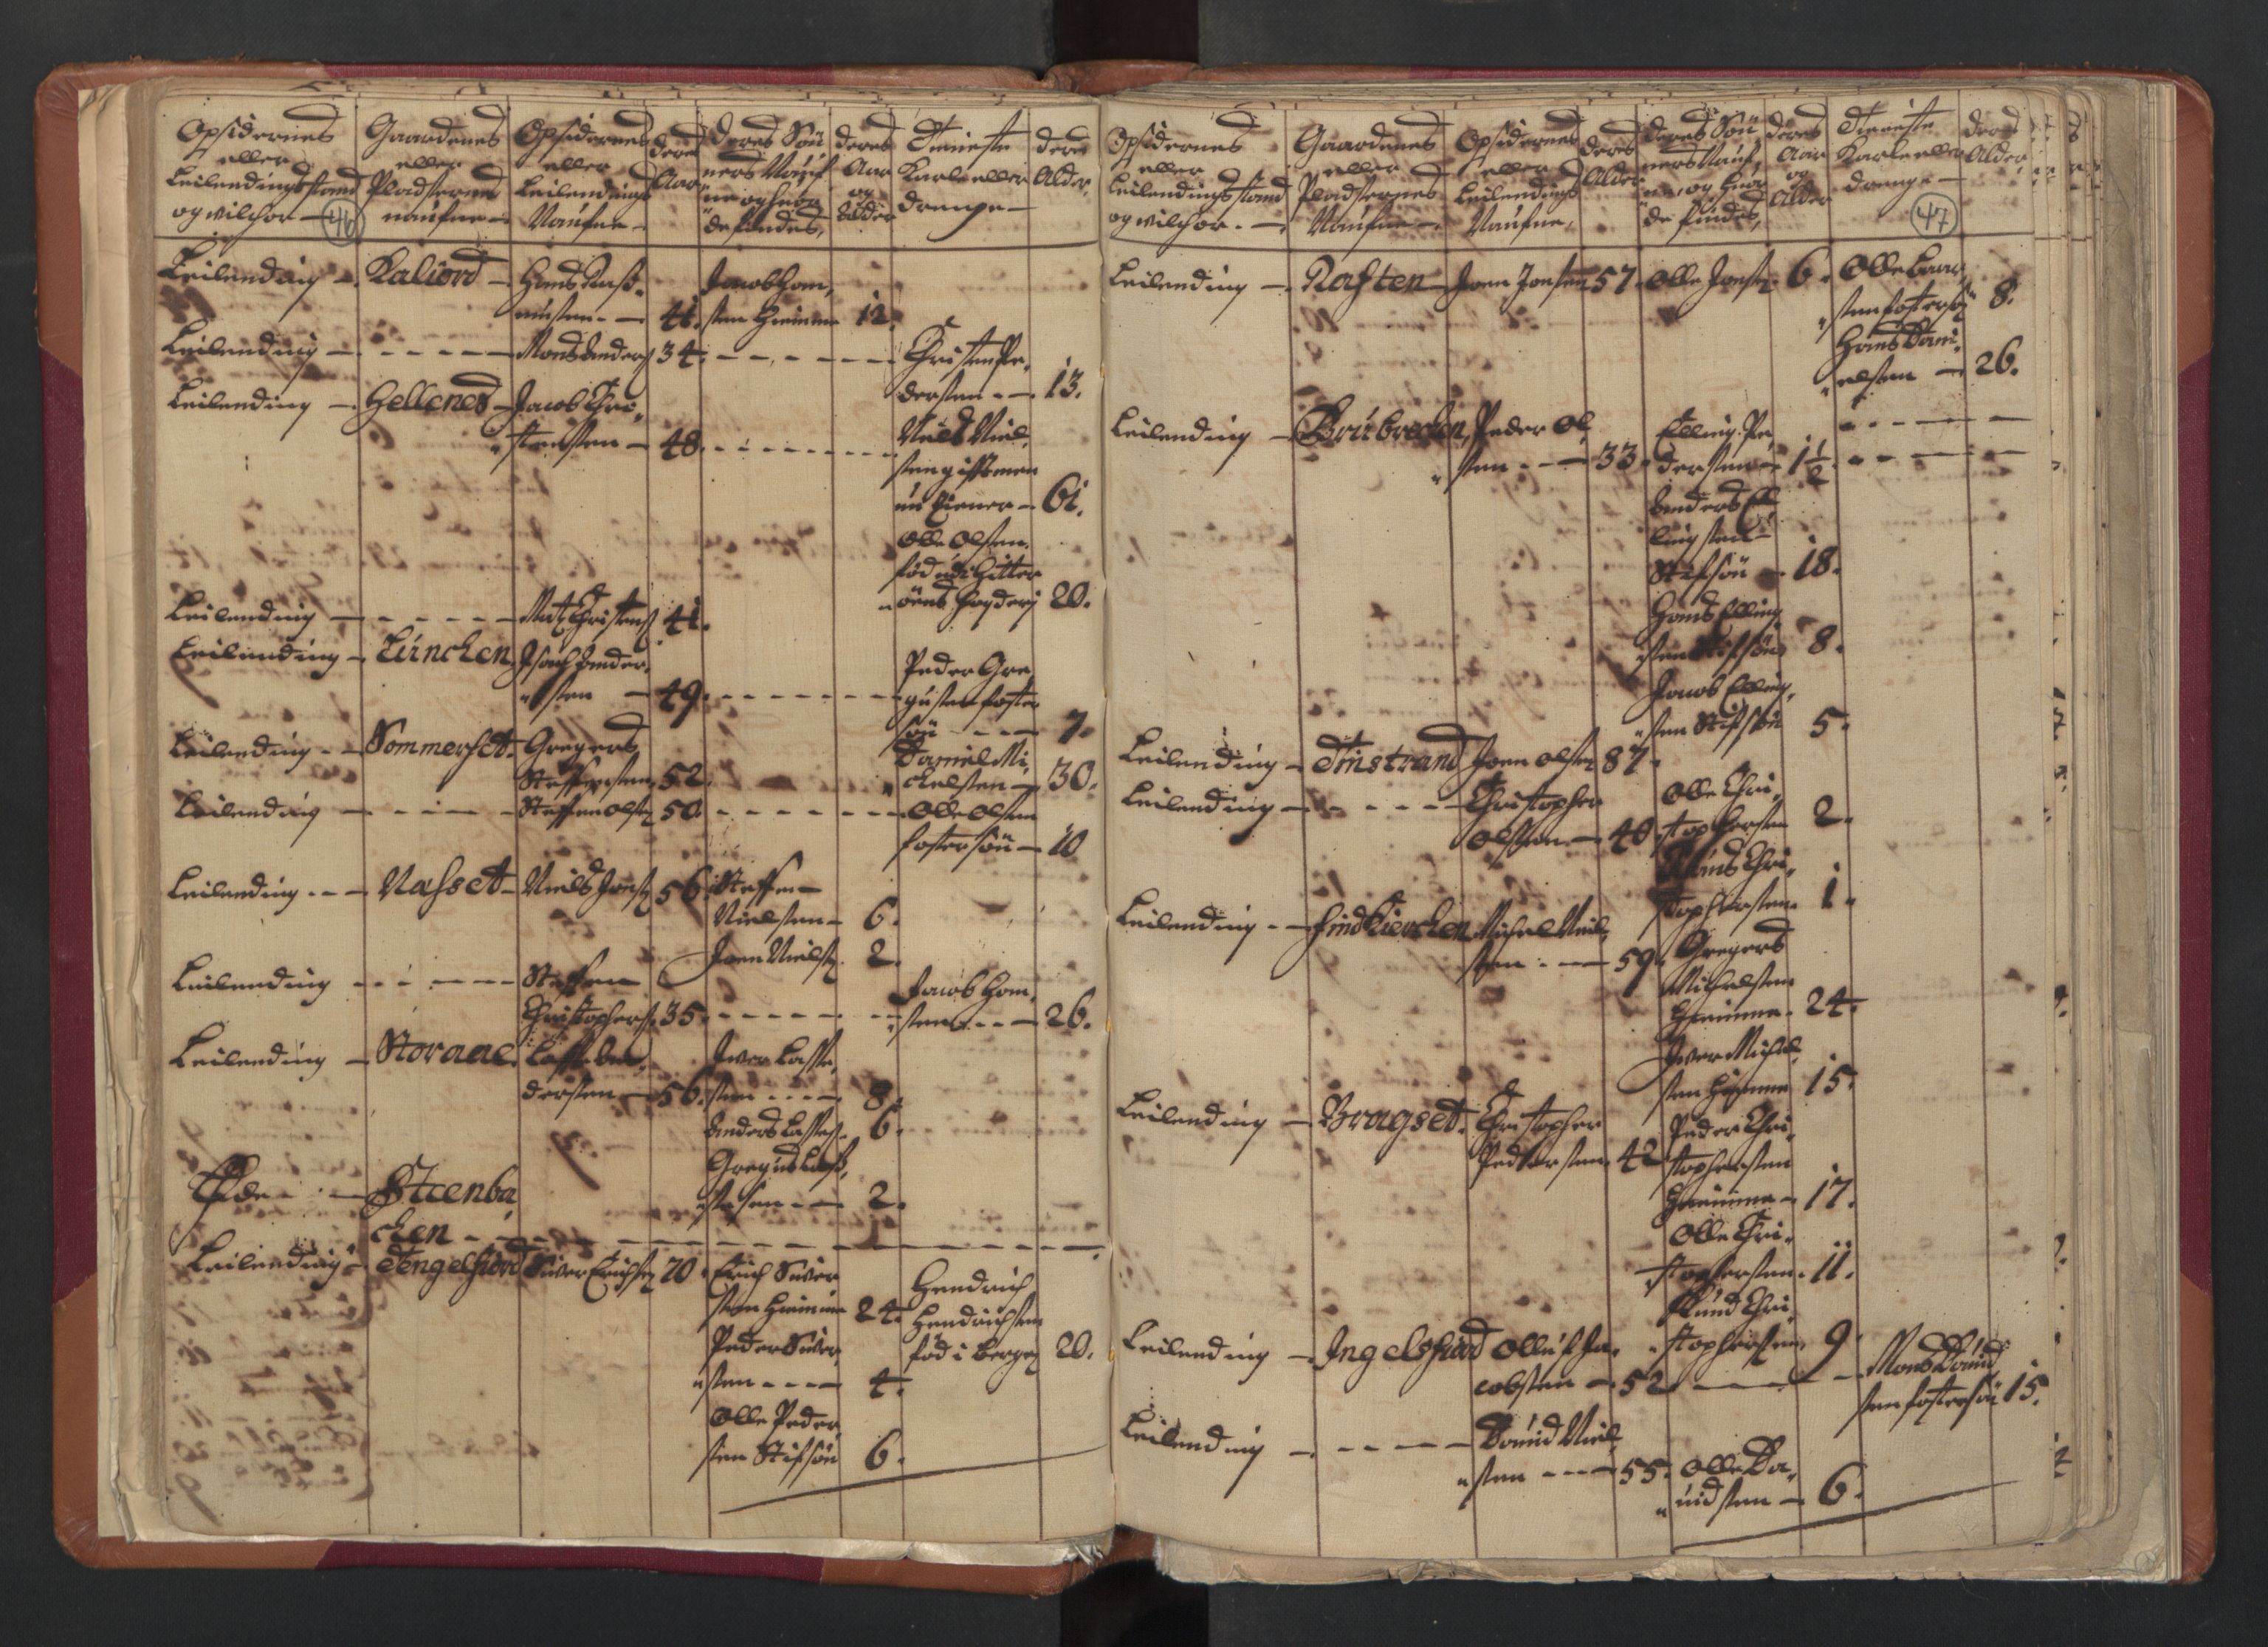 RA, Census (manntall) 1701, no. 18: Vesterålen, Andenes and Lofoten fogderi, 1701, p. 46-47